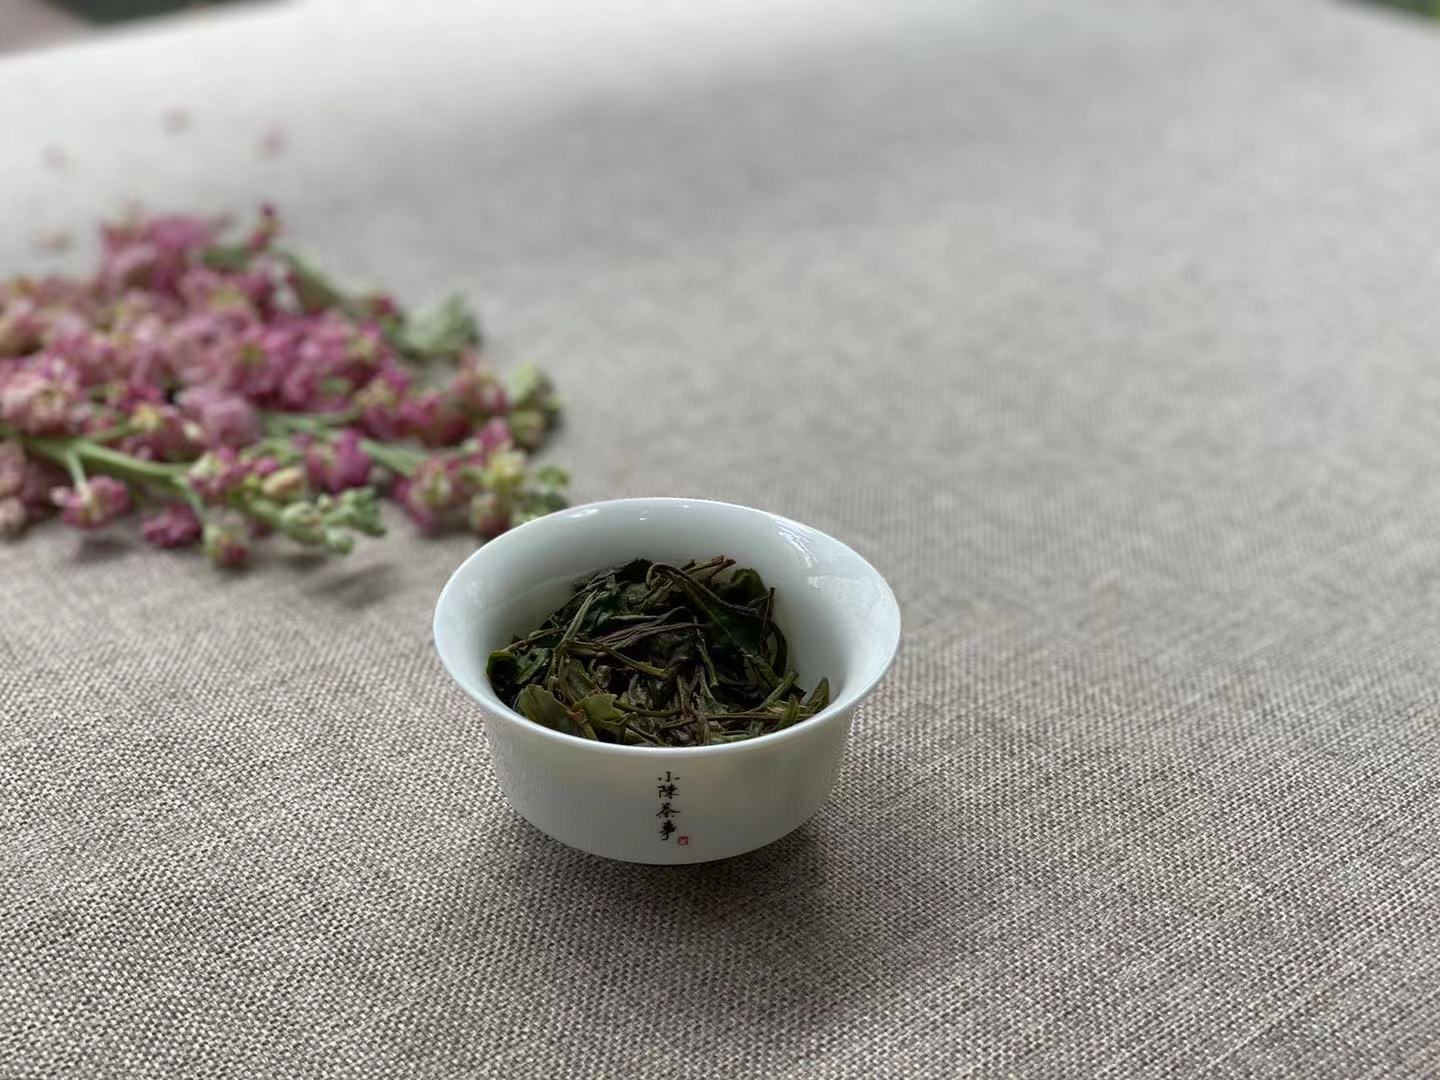 新茶和老茶、春茶和秋茶、散茶和饼茶，白茶的分类你都了解吗？